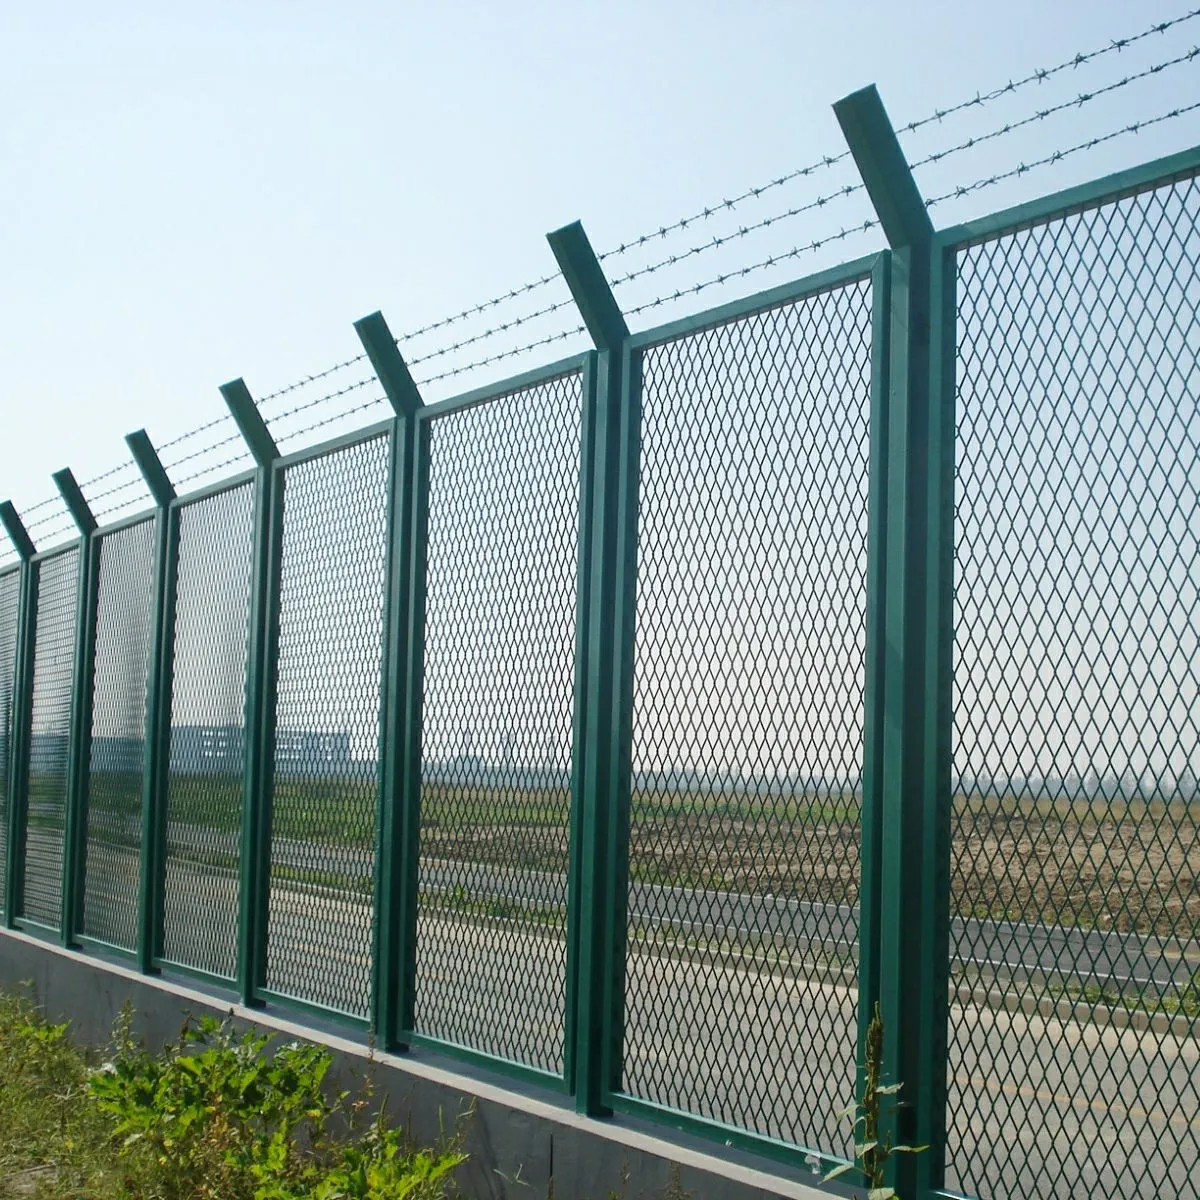 Grades de cerca de segurança de ferro revestido de PVC de alta qualidade, painéis decorativos de metal para cercas de fazenda, feitos de material durável